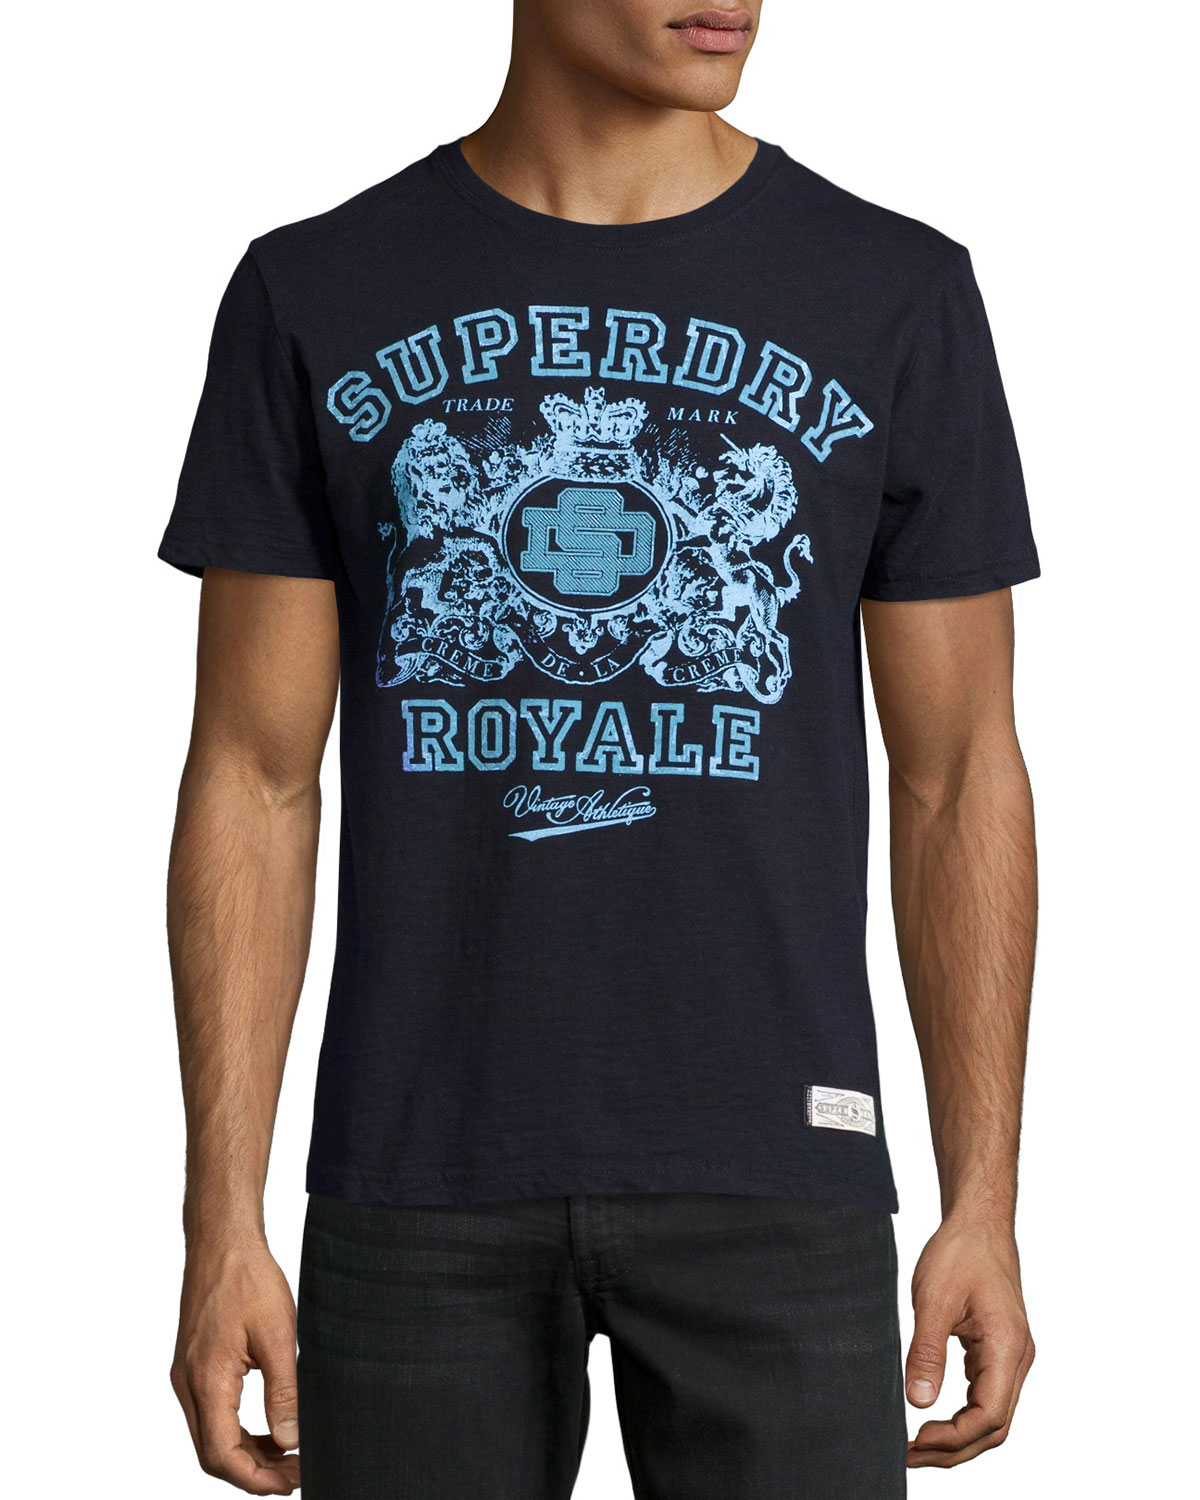 美國百分百【Superdry】極度乾燥 T恤 上衣 T-shirt 短袖 短T 圓領 深藍 皇家 徽章 S號 F339